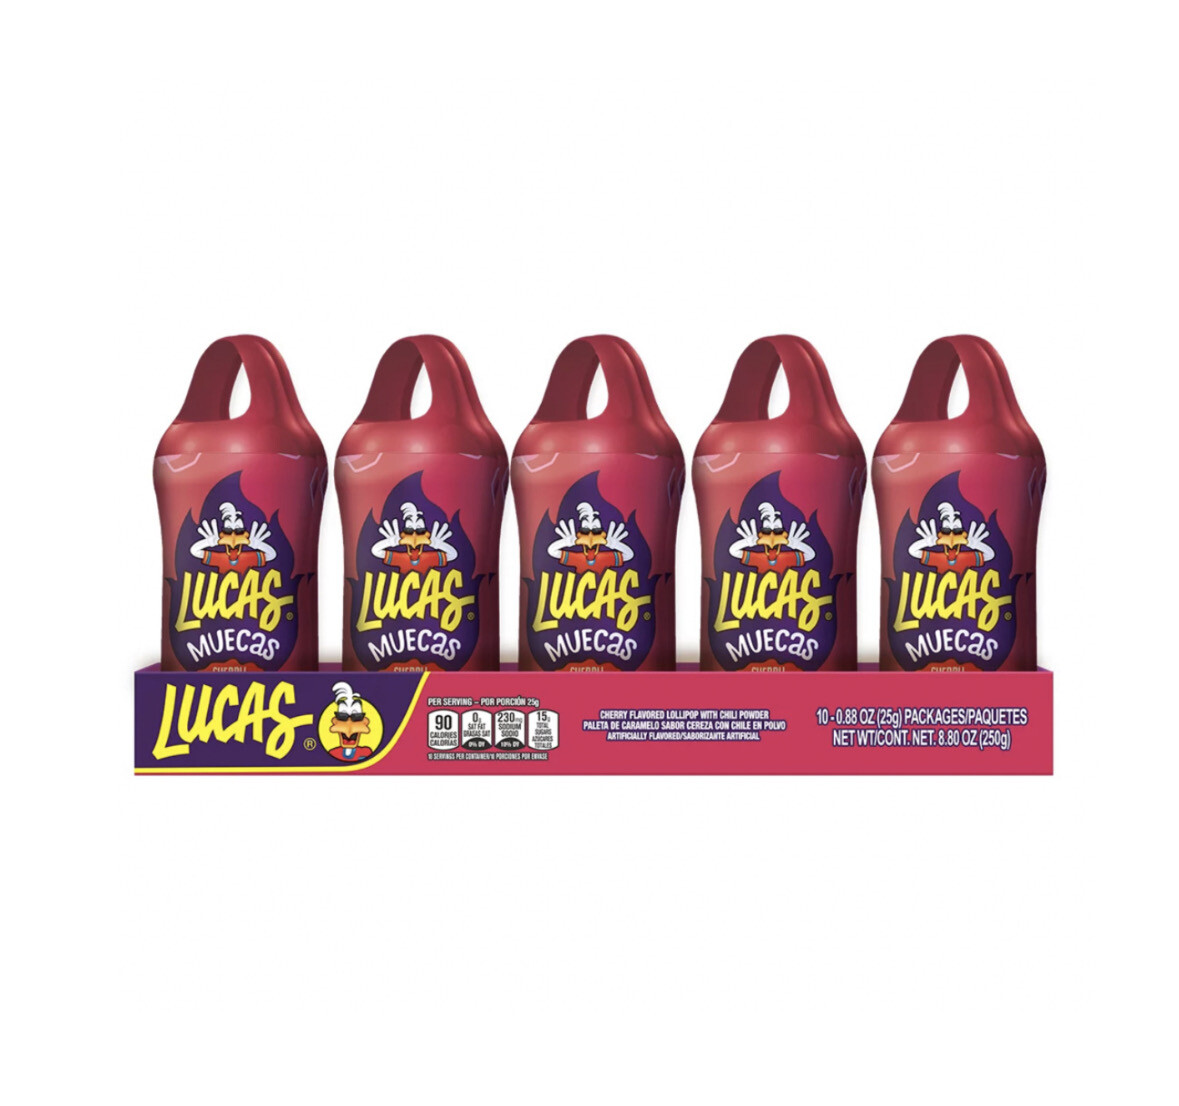 Lucas Muecas Cherry Flavored Lollipop 10 Pieces/ 10-0.88 Oz (25g)